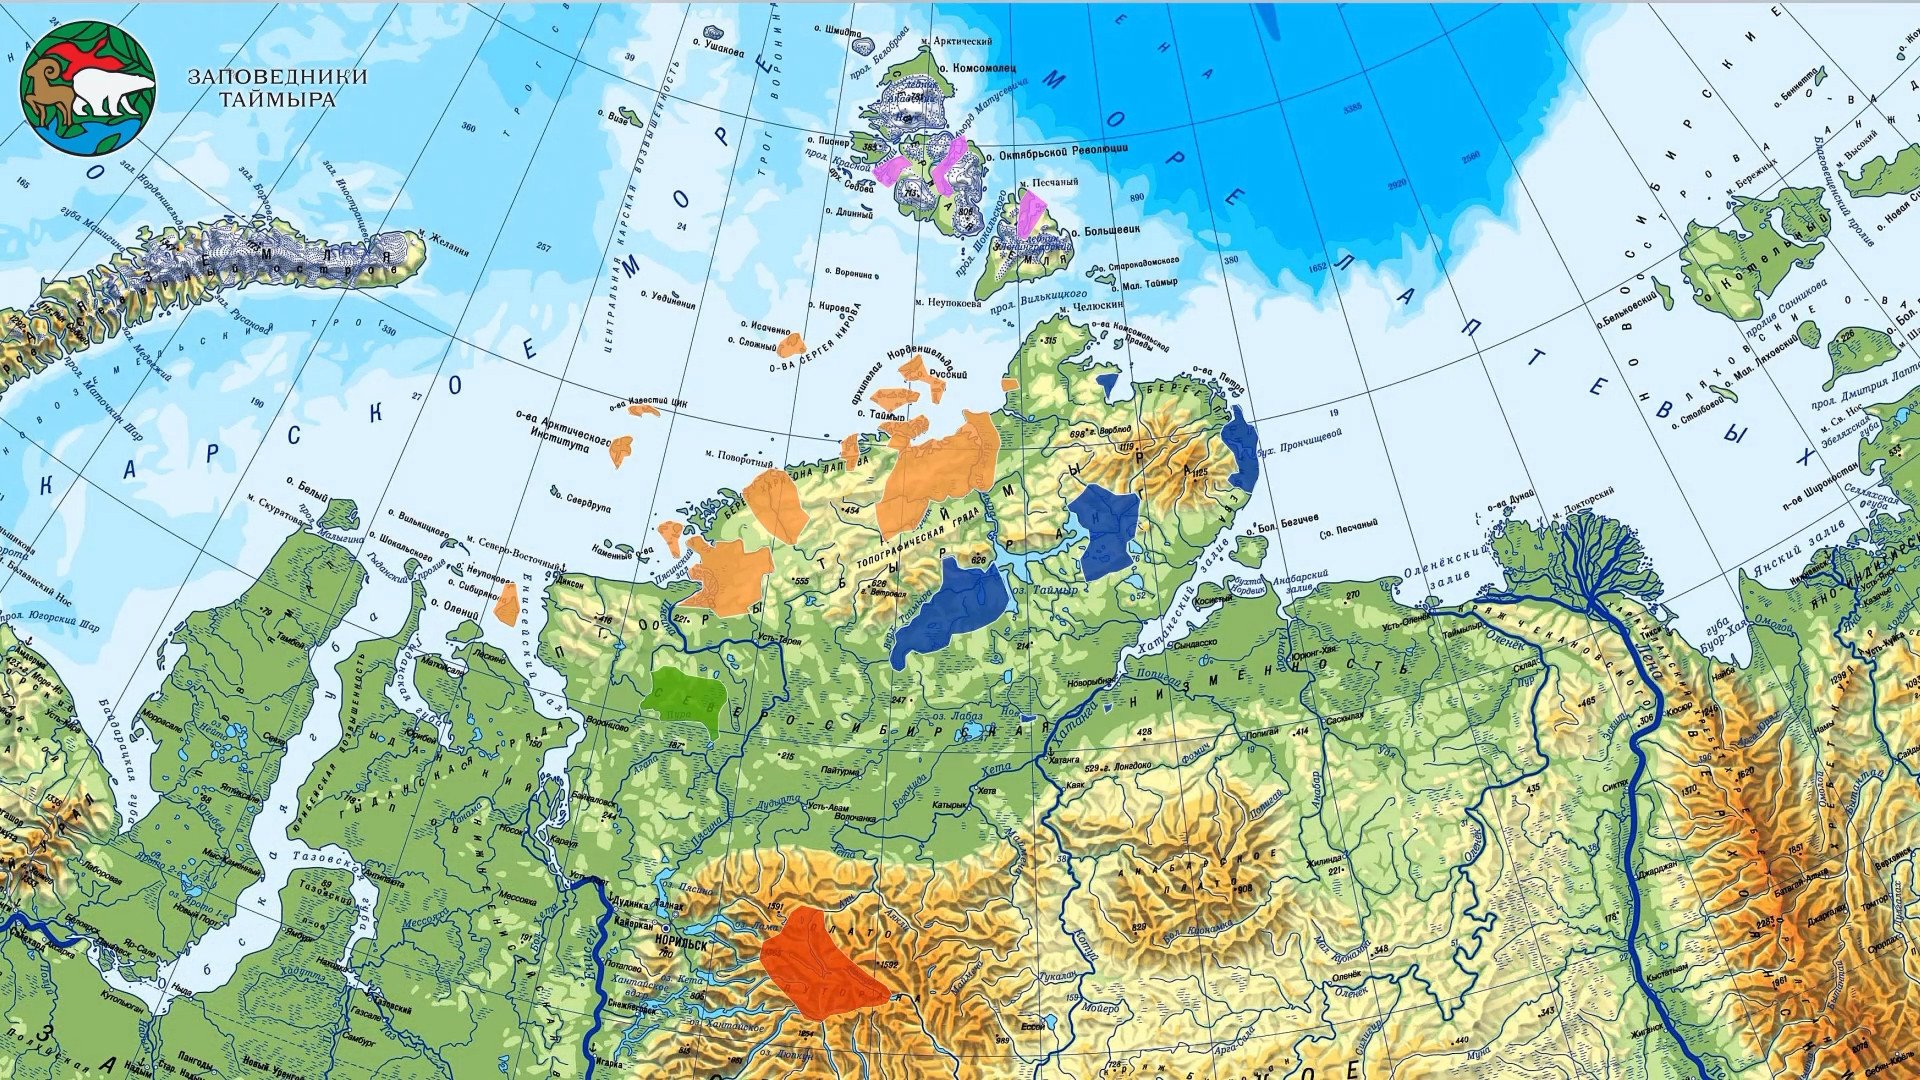 Мыс челюскин находится на скандинавском полуострове. Заповедники Таймыра на карте. Таймырский заповедник на карте России. Таймырский заповедник карта заповедника. Таймырский заповедник расположение на карте.